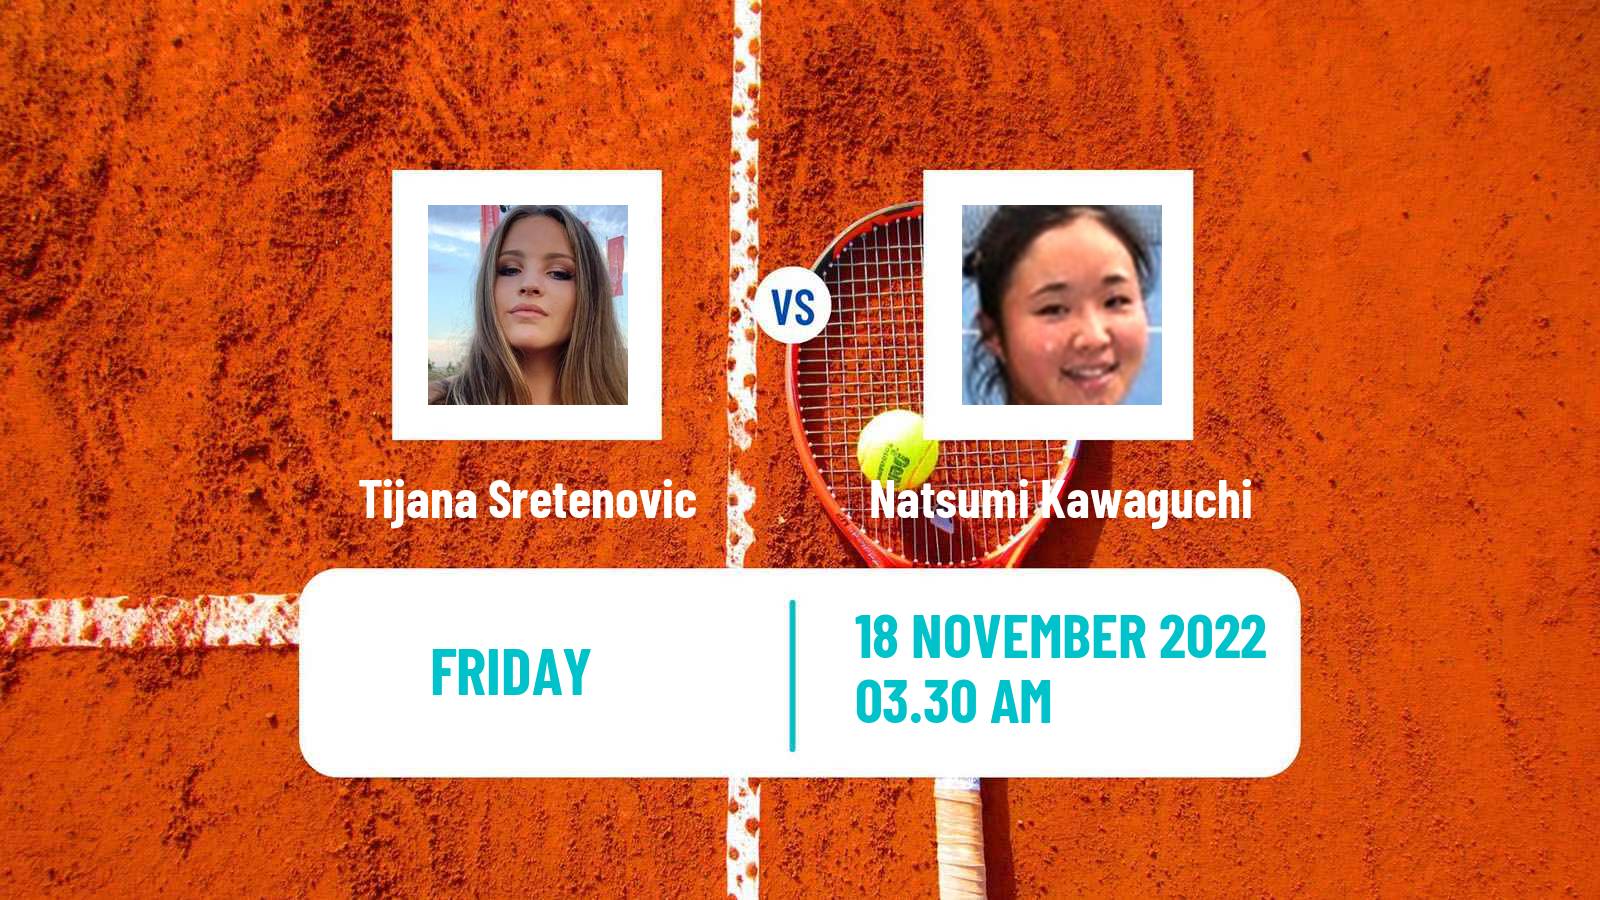 Tennis ITF Tournaments Tijana Sretenovic - Natsumi Kawaguchi